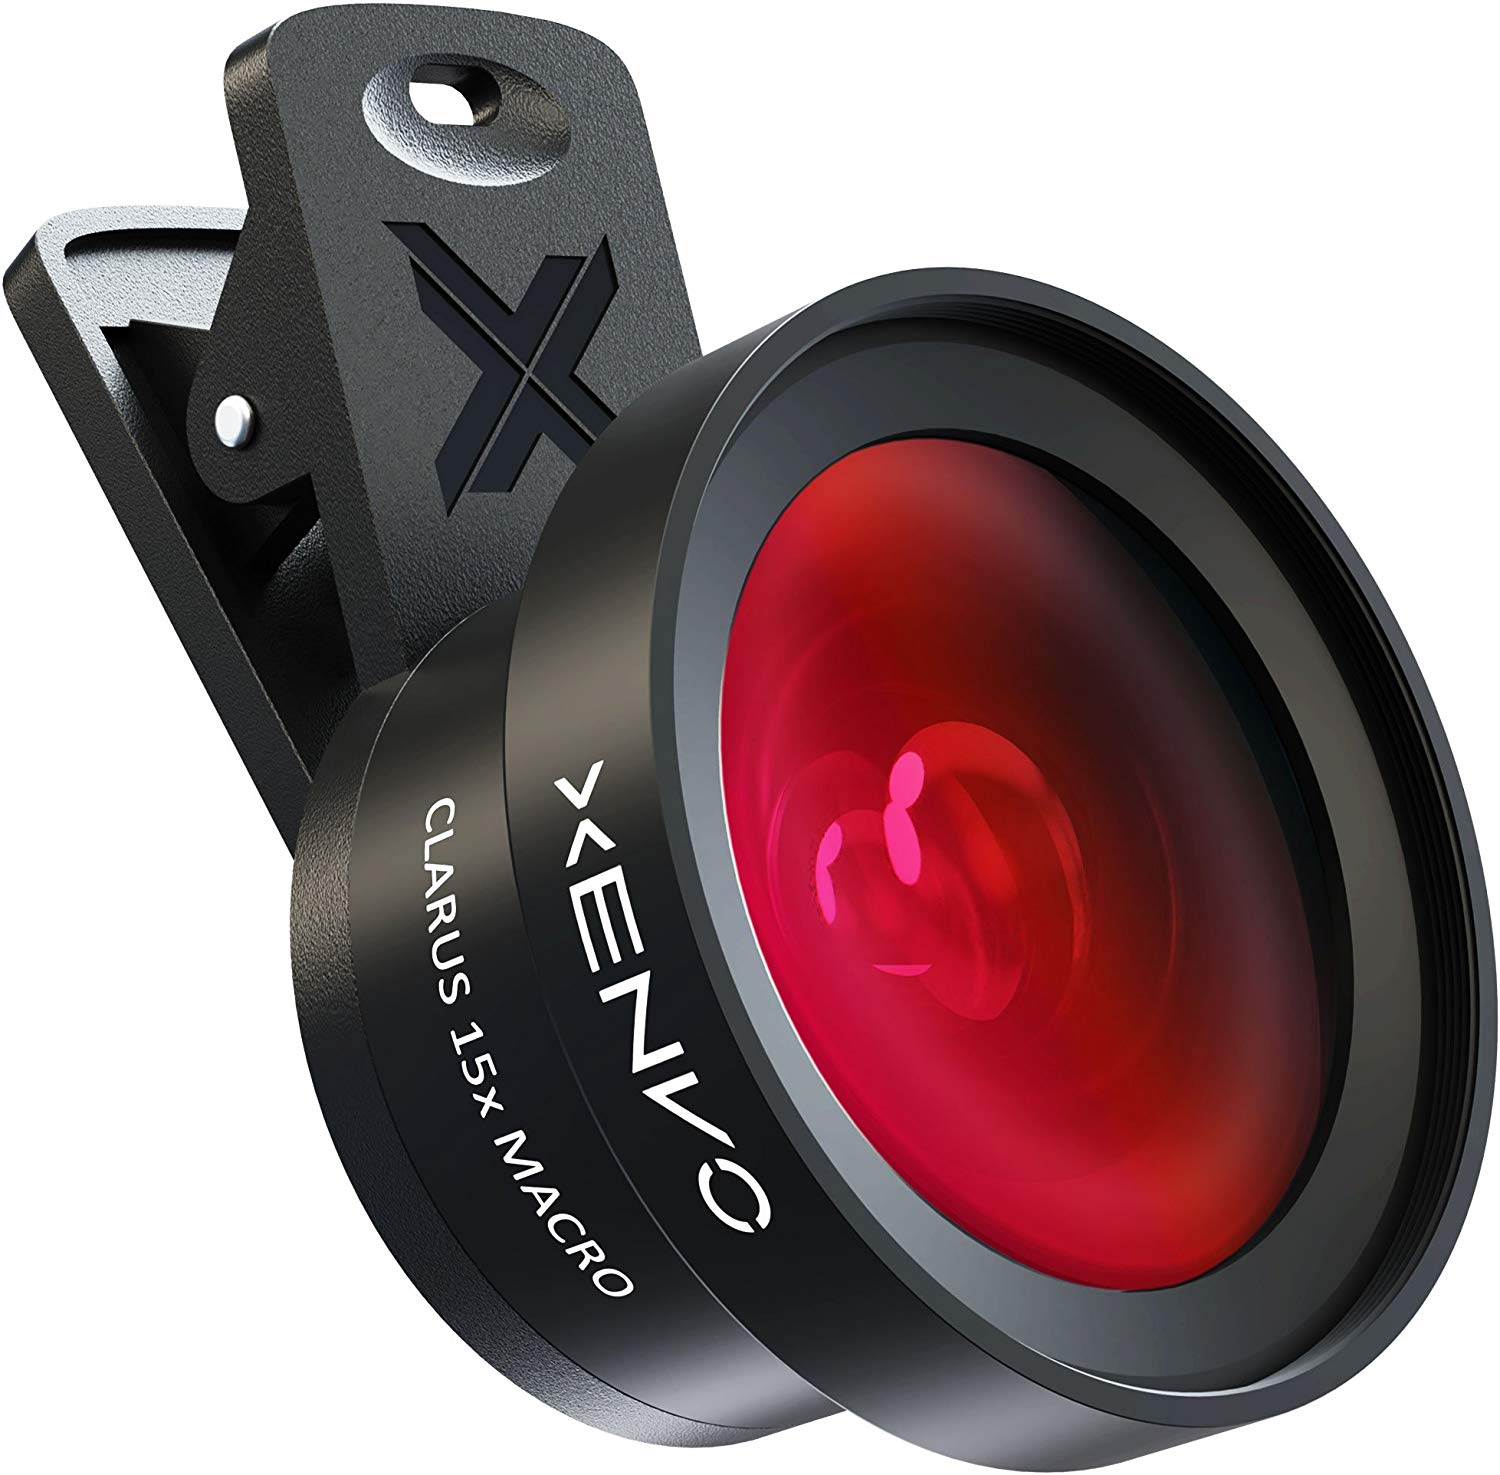 Xenvo Pro Lens Kit - Best Gift For Photographers